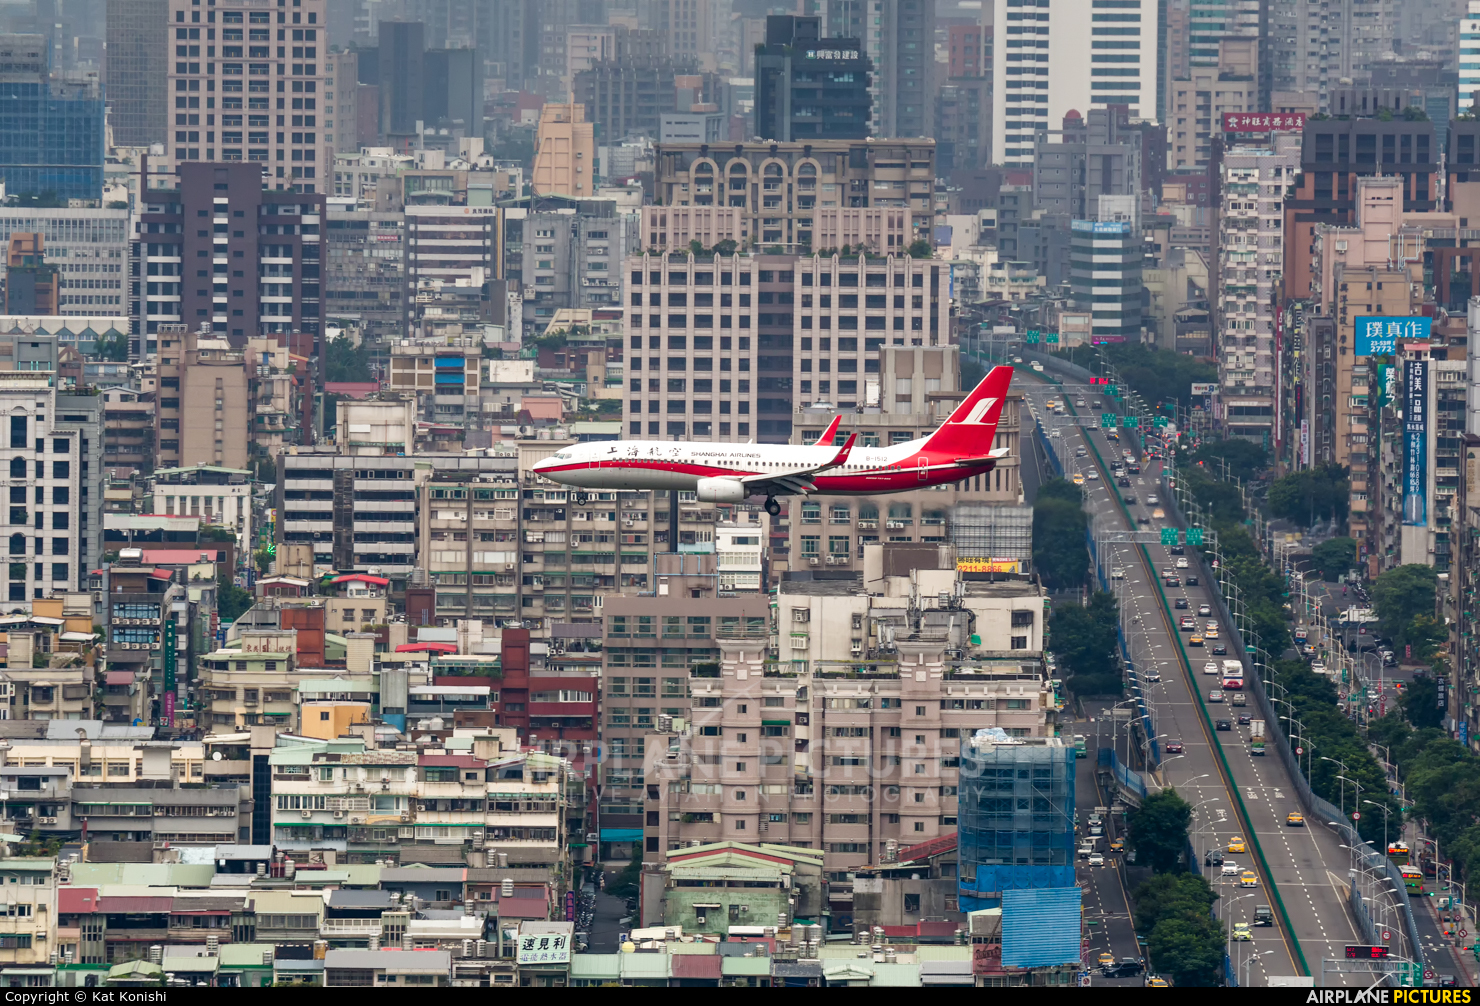 Shanghai Airlines B-1512 aircraft at Taipei Sung Shan/Songshan Airport